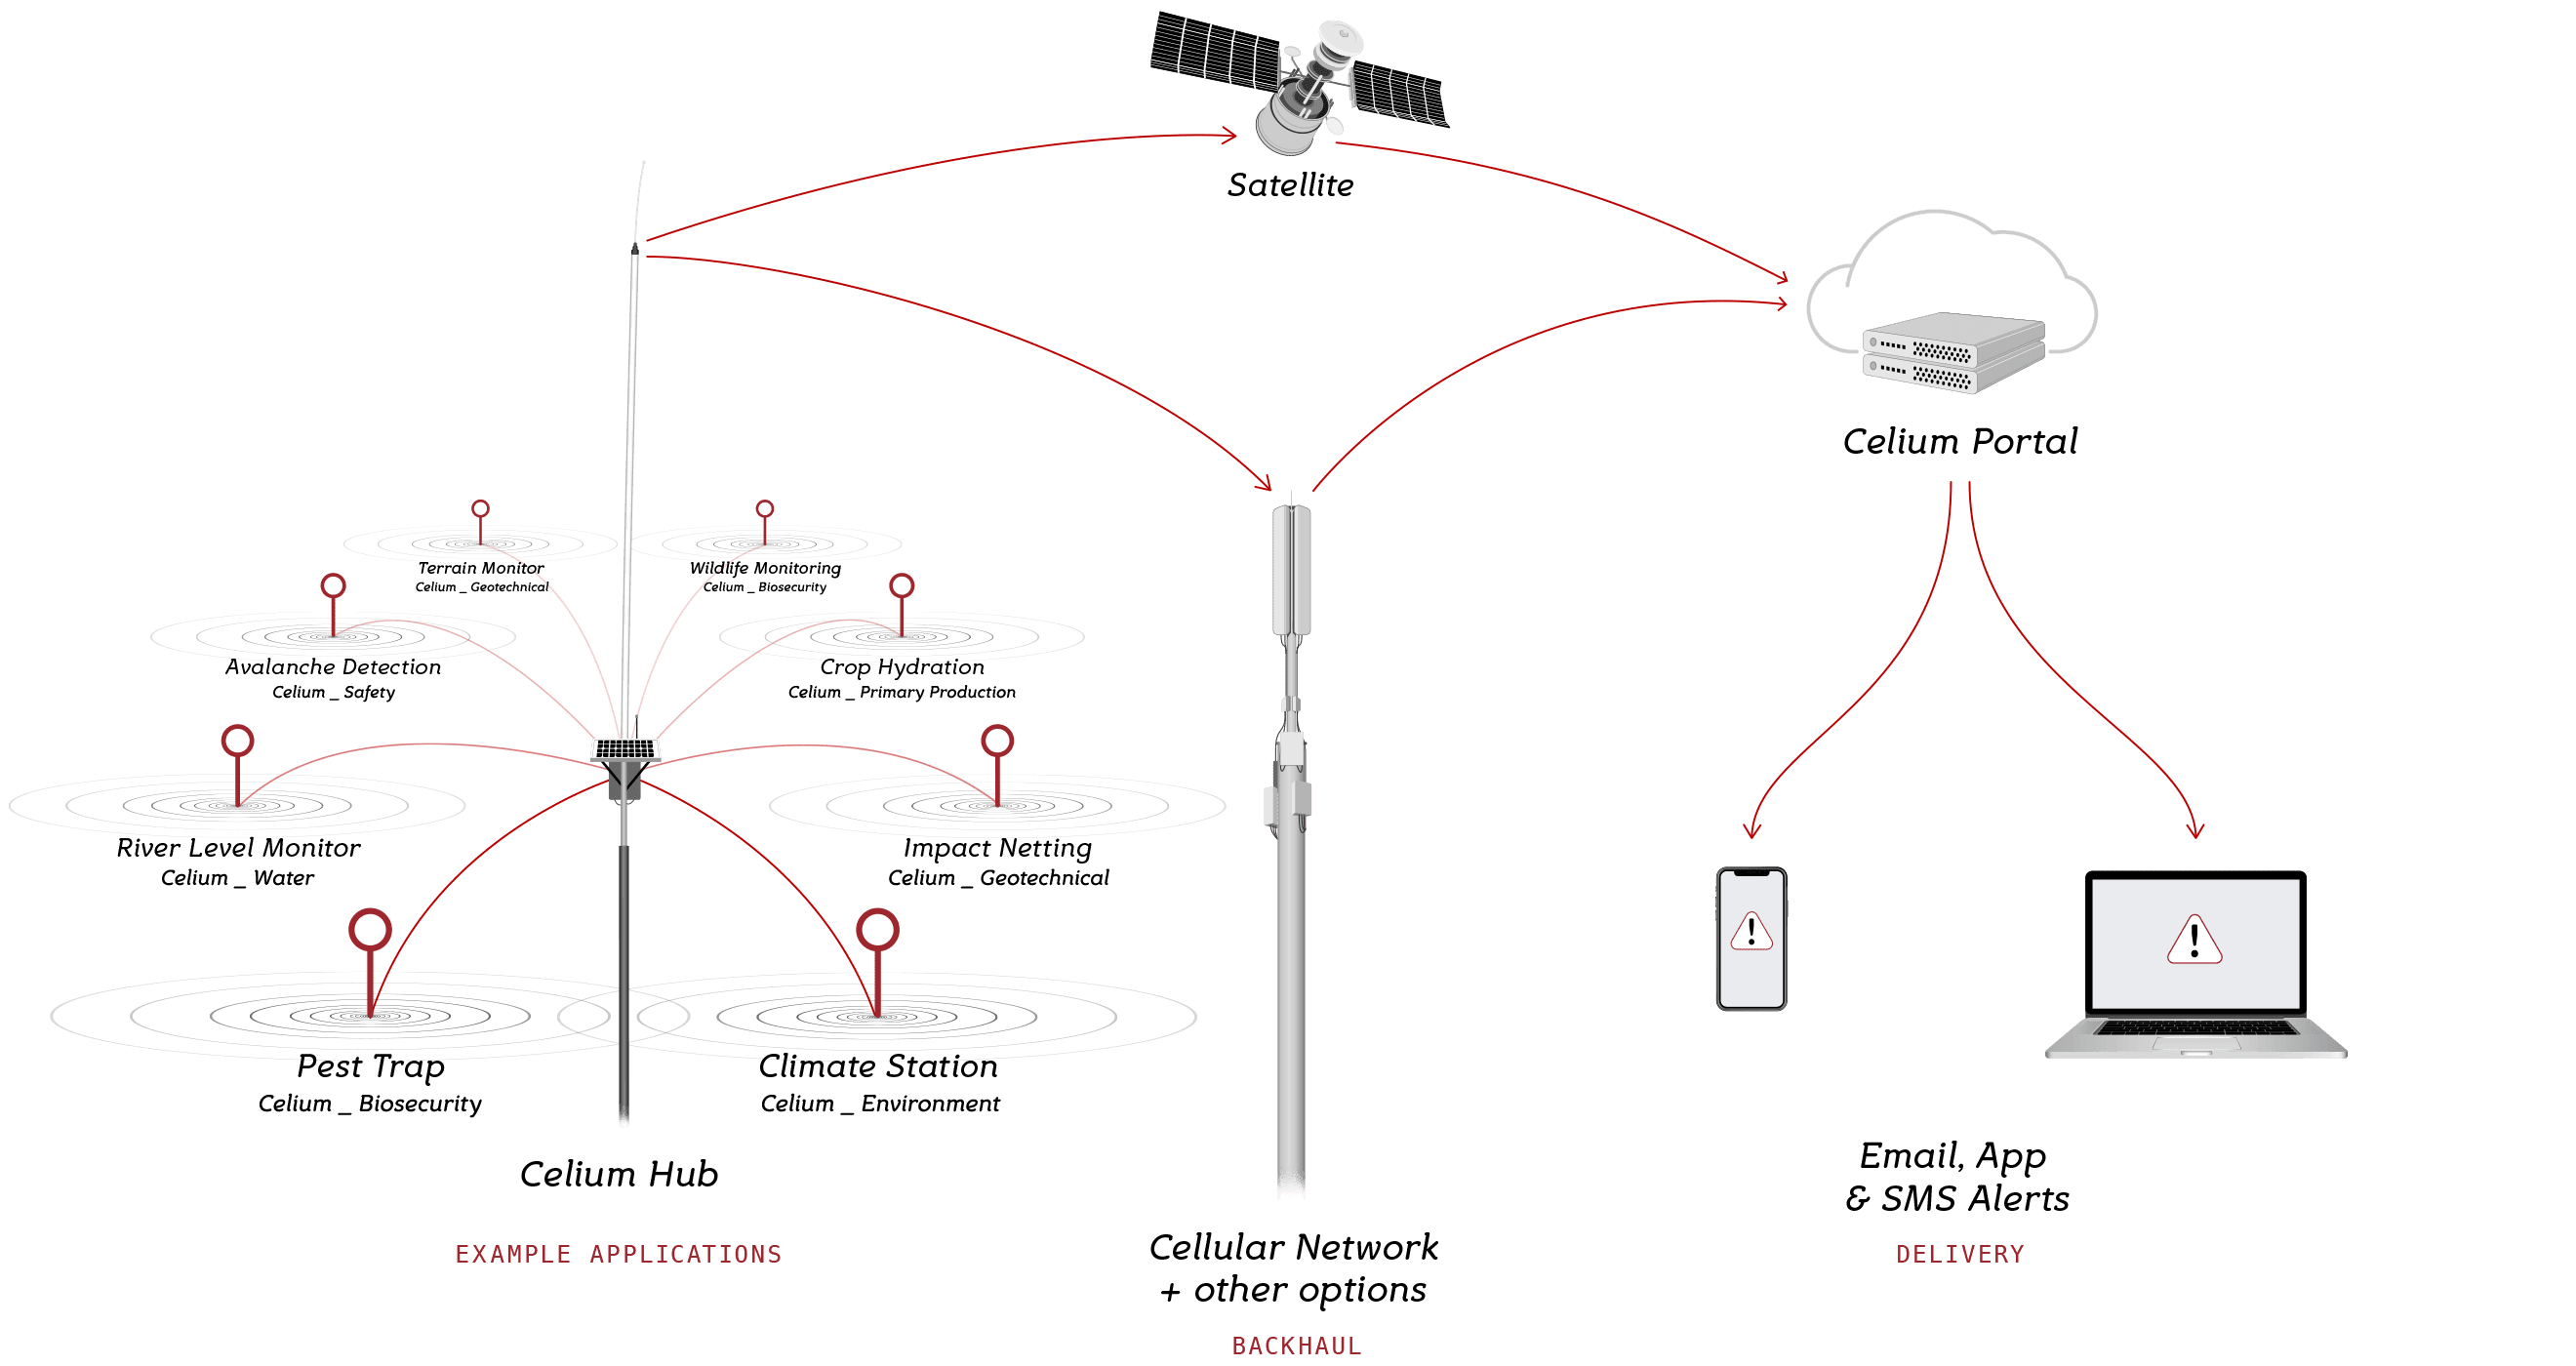 Celium Network Diagram